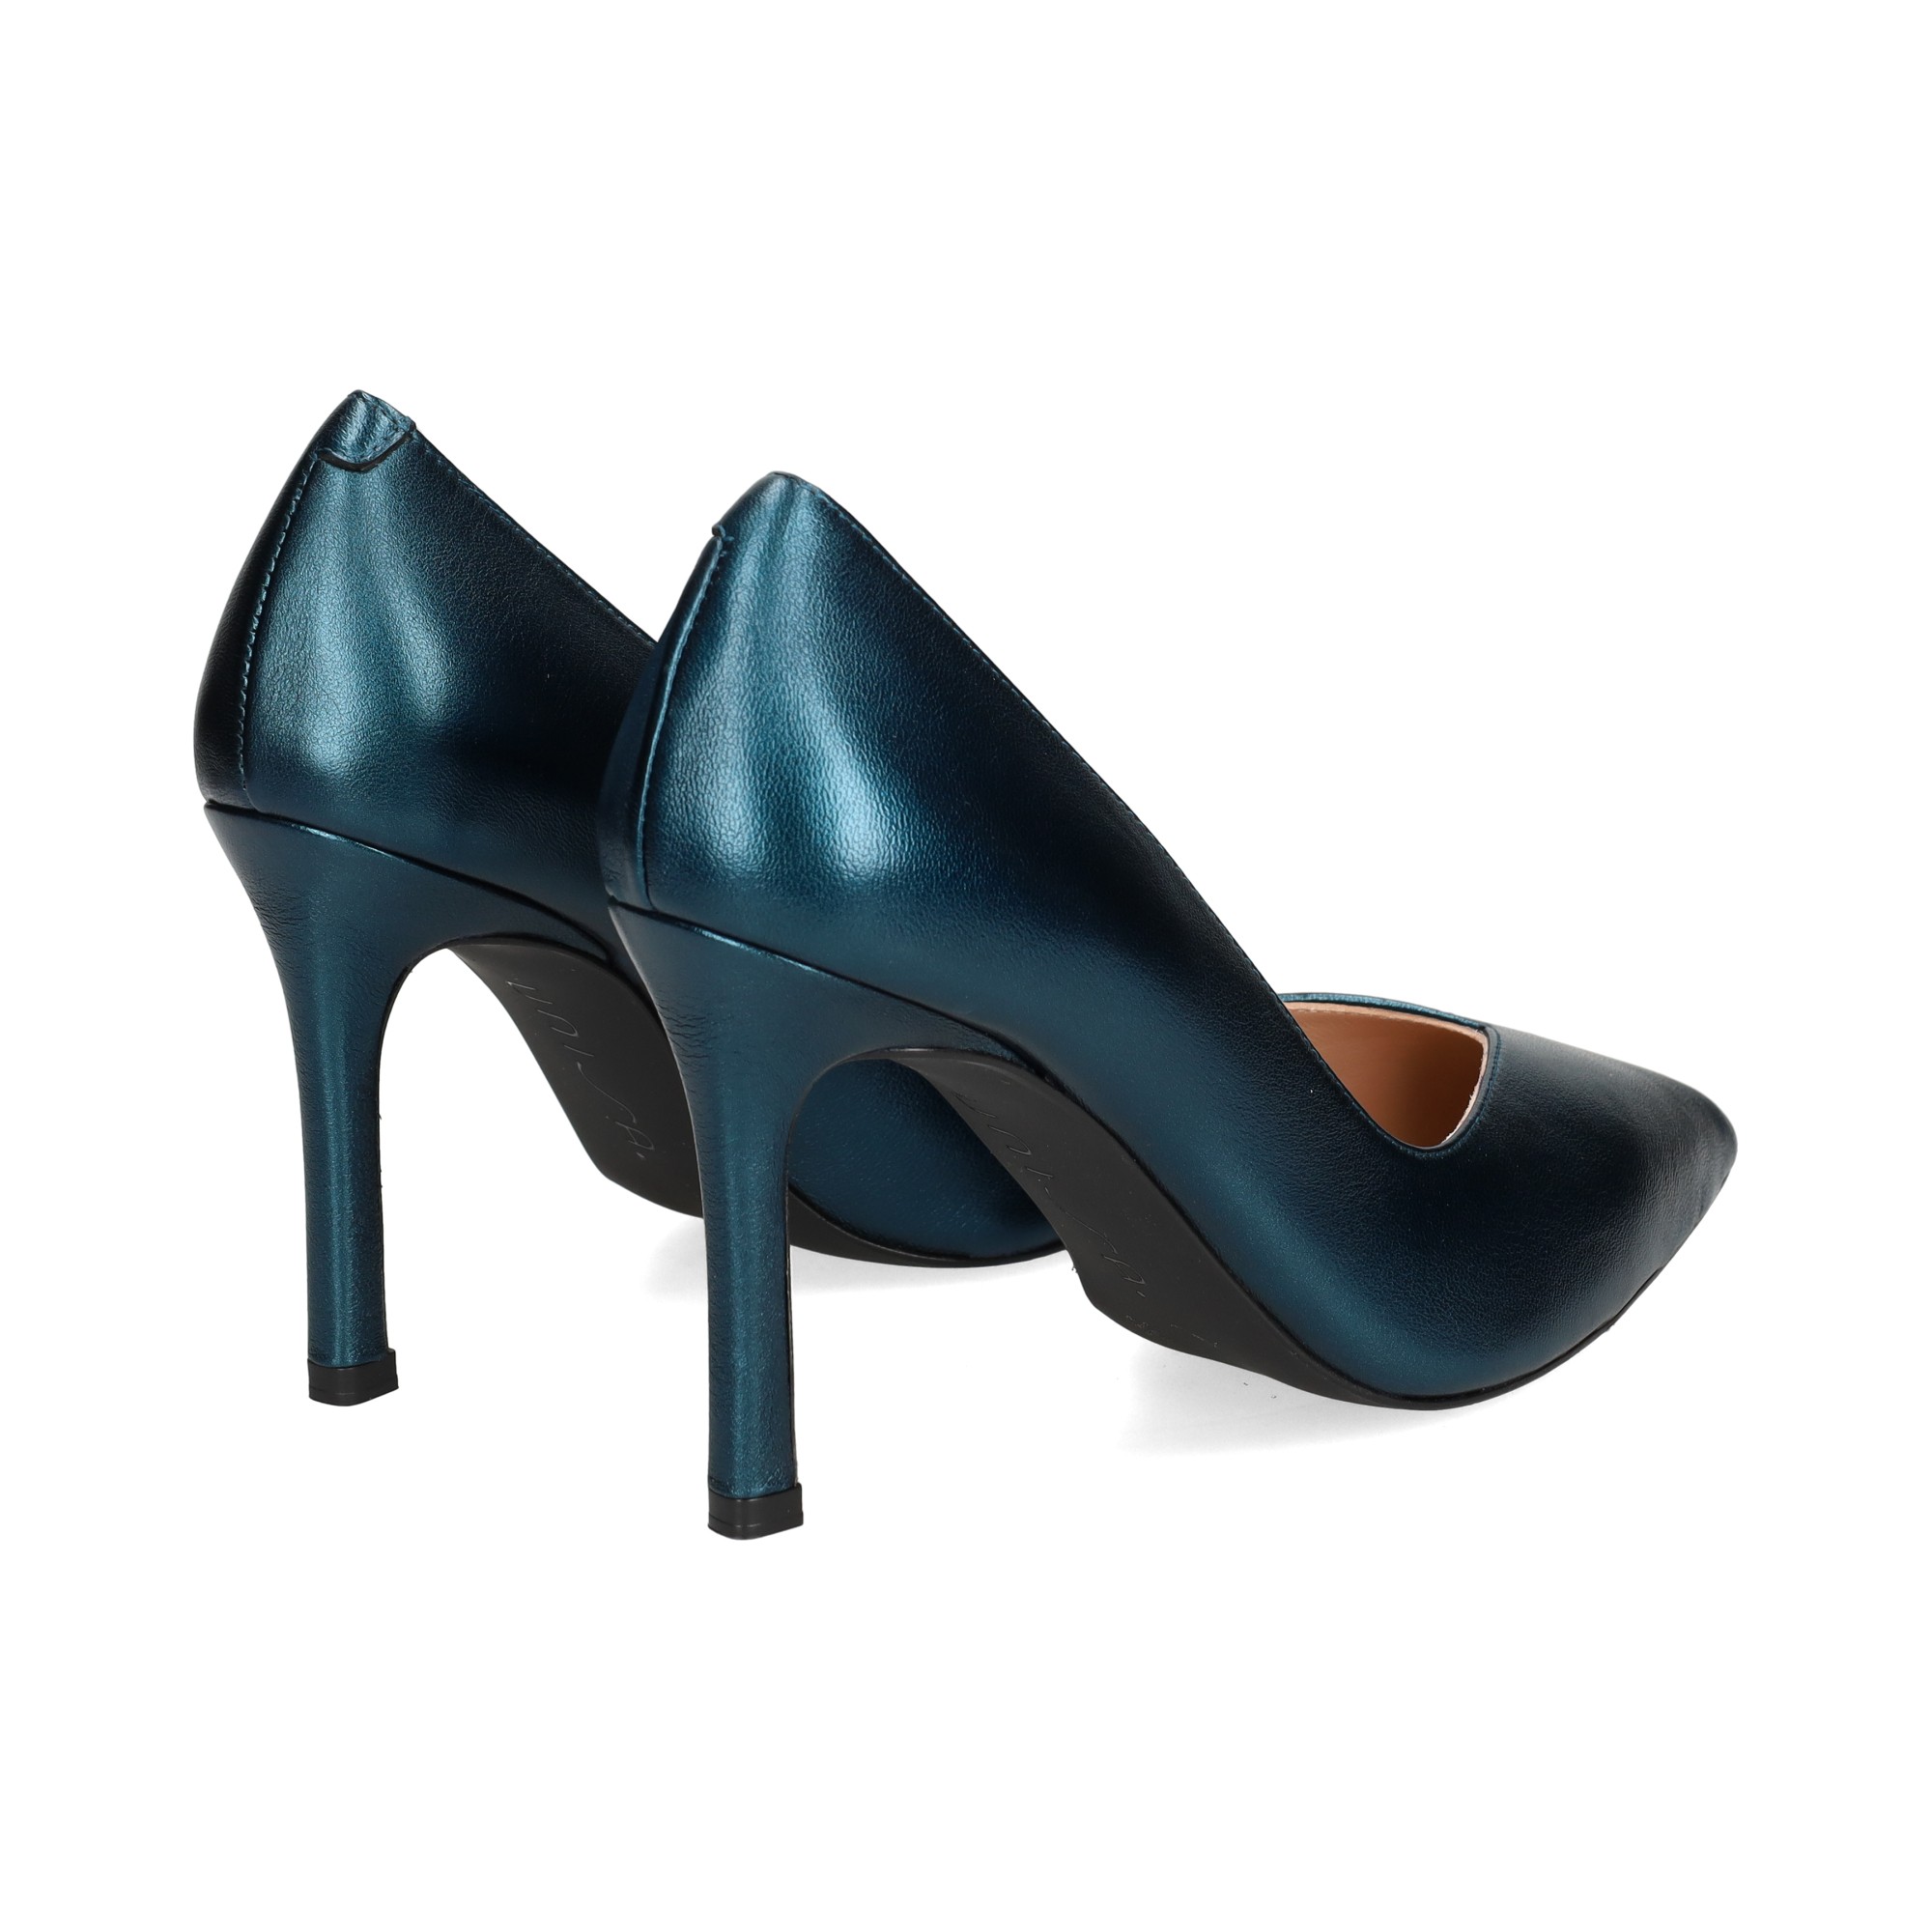 Gianni Bini | Shoes | Gianni Bini Dark Teal Opentoed Heels W Bows Sz 95 |  Poshmark